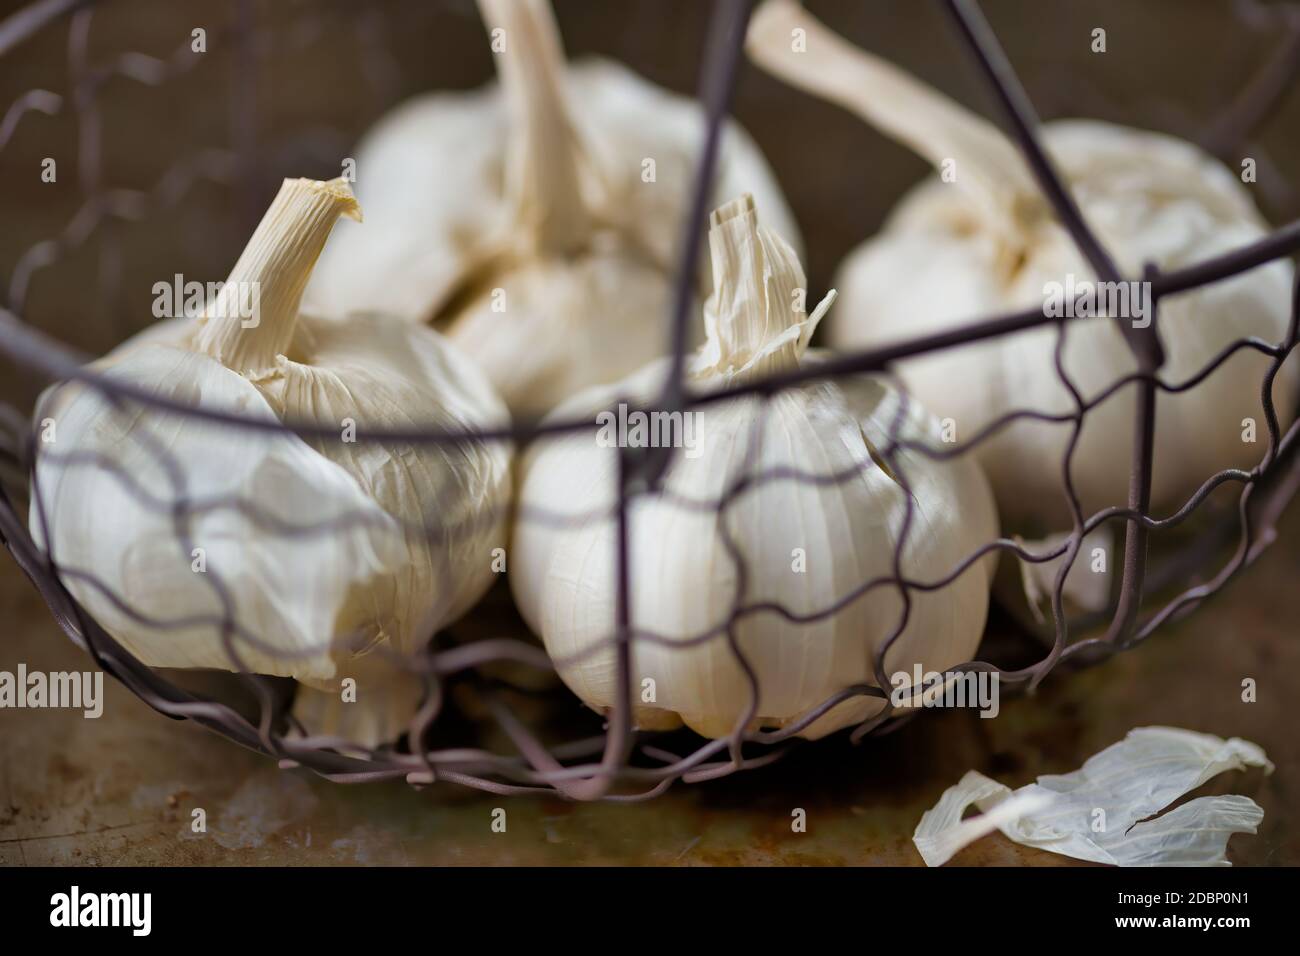 primo piano di ingredienti alimentari all'aglio rustico Foto Stock